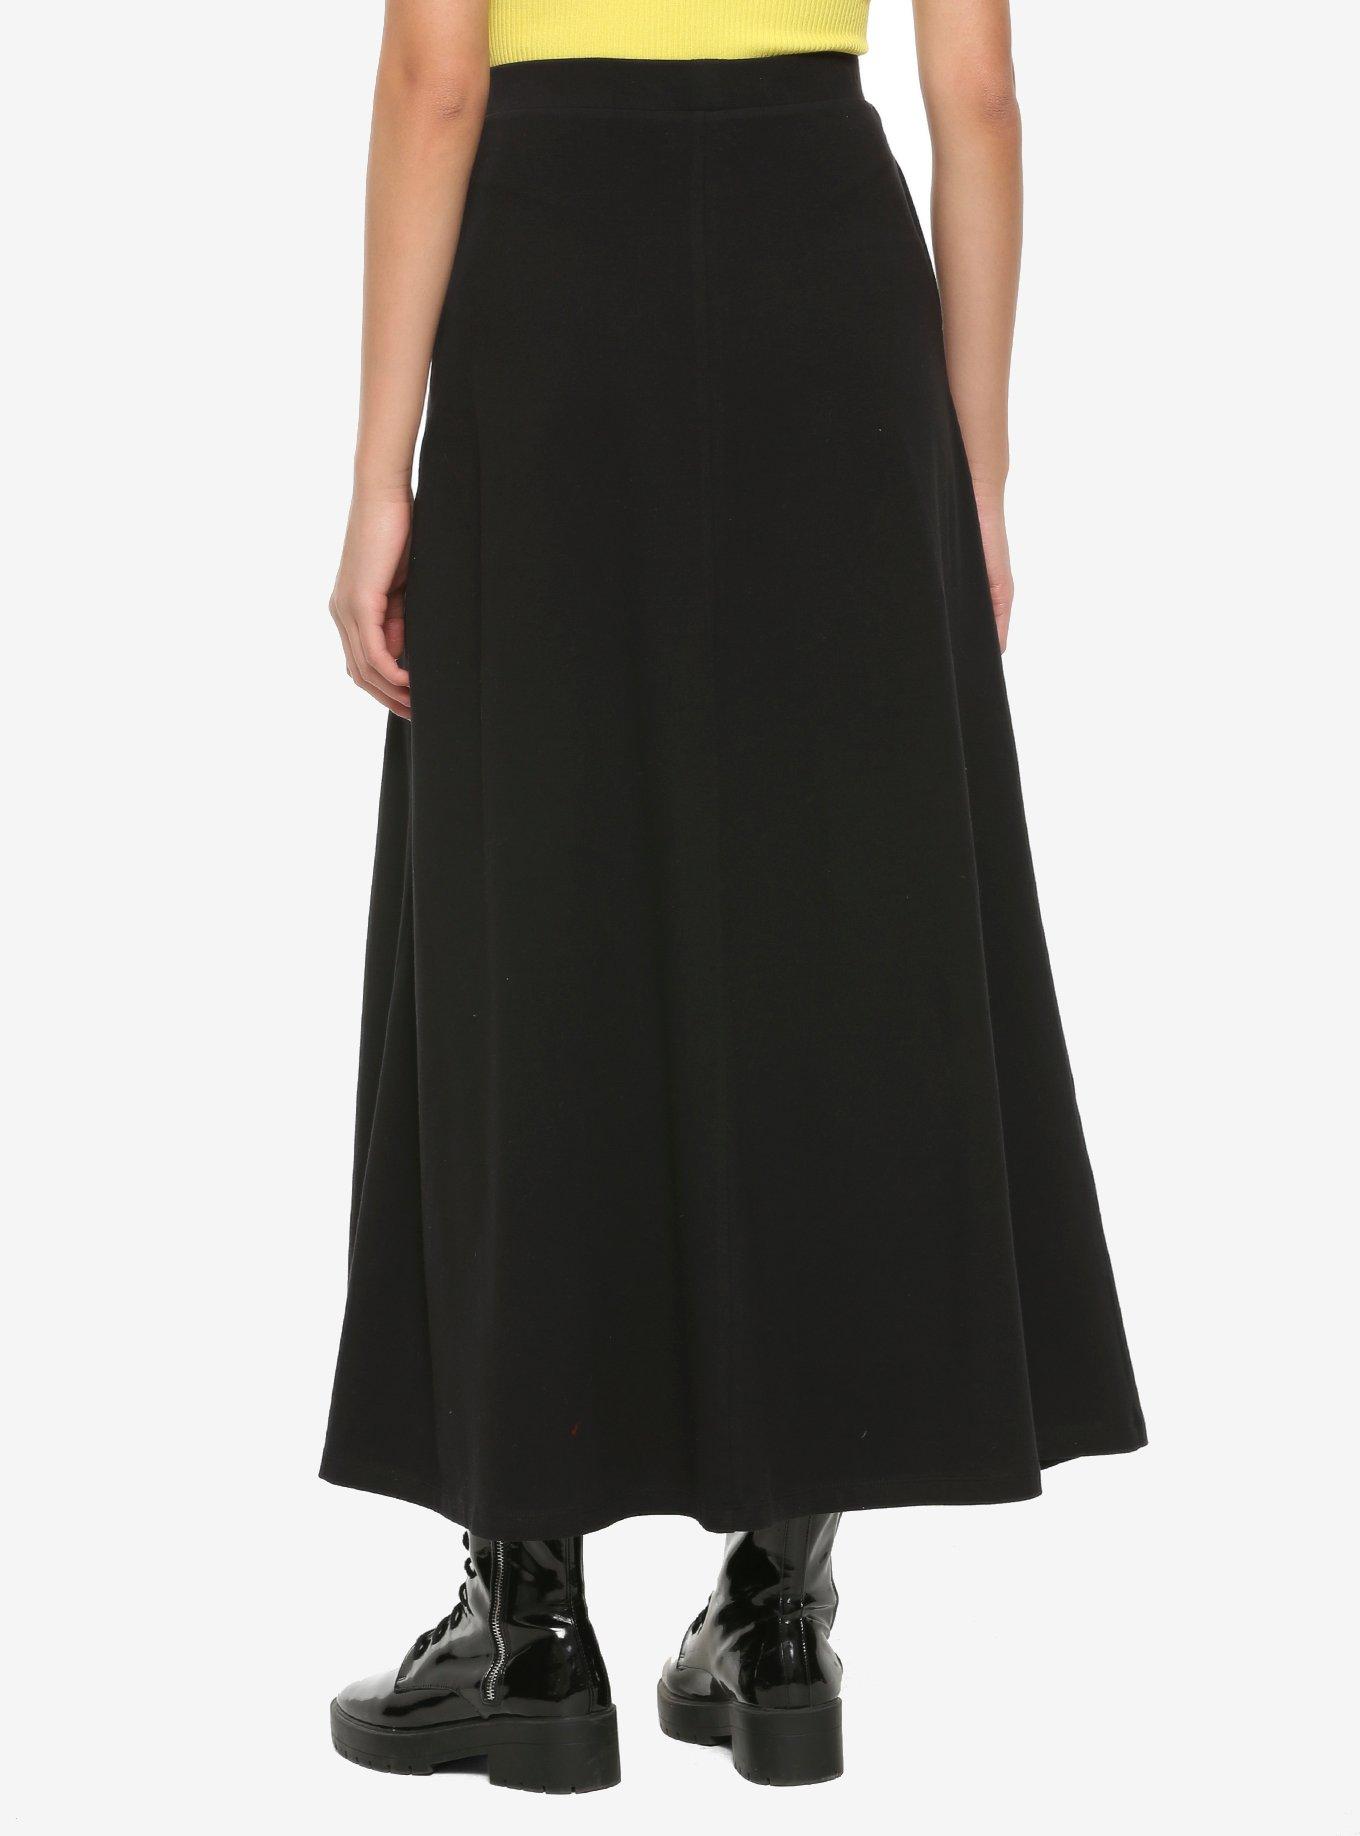 Chain & Double Slits Black Maxi Skirt, BLACK, alternate